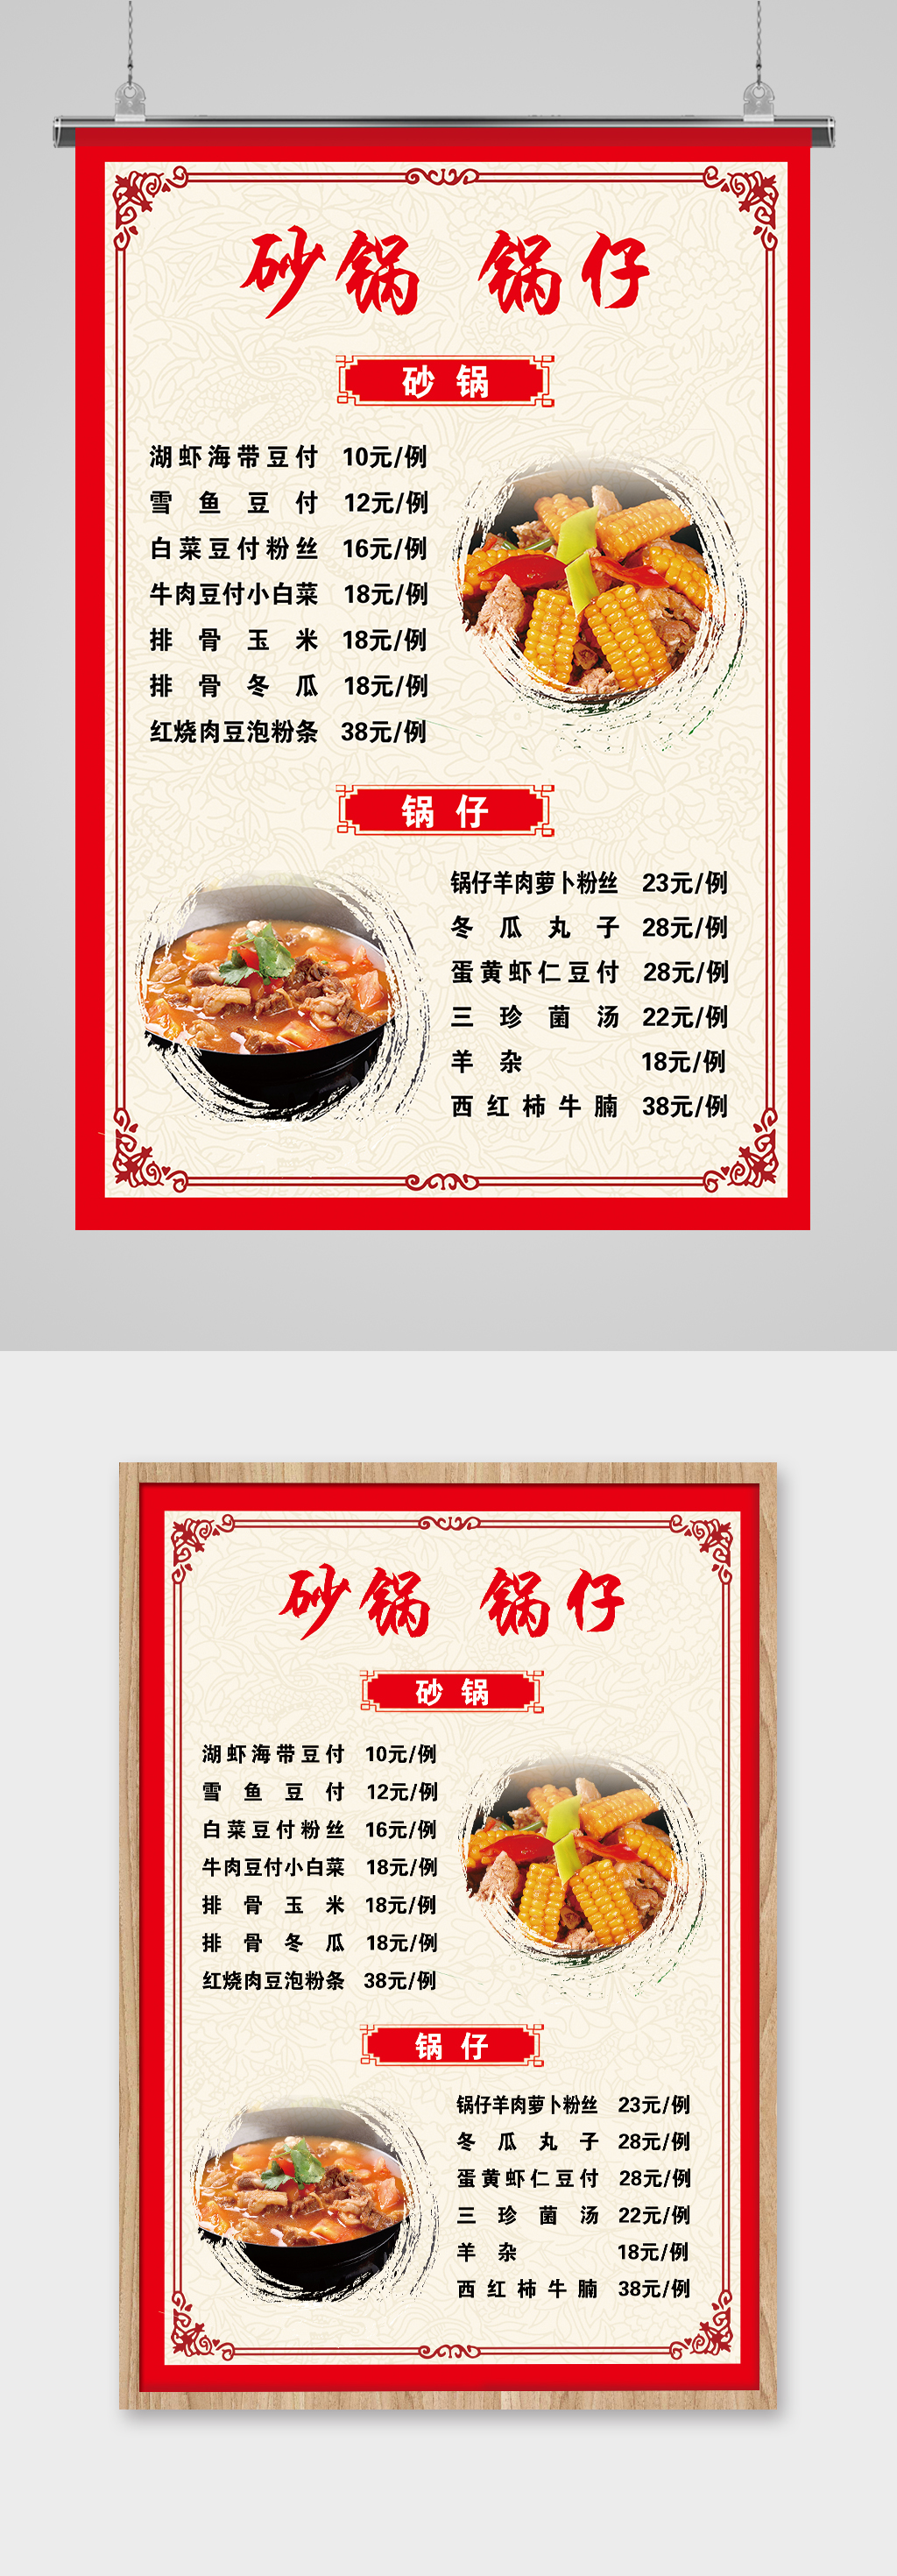 砂锅锅仔菜单图片